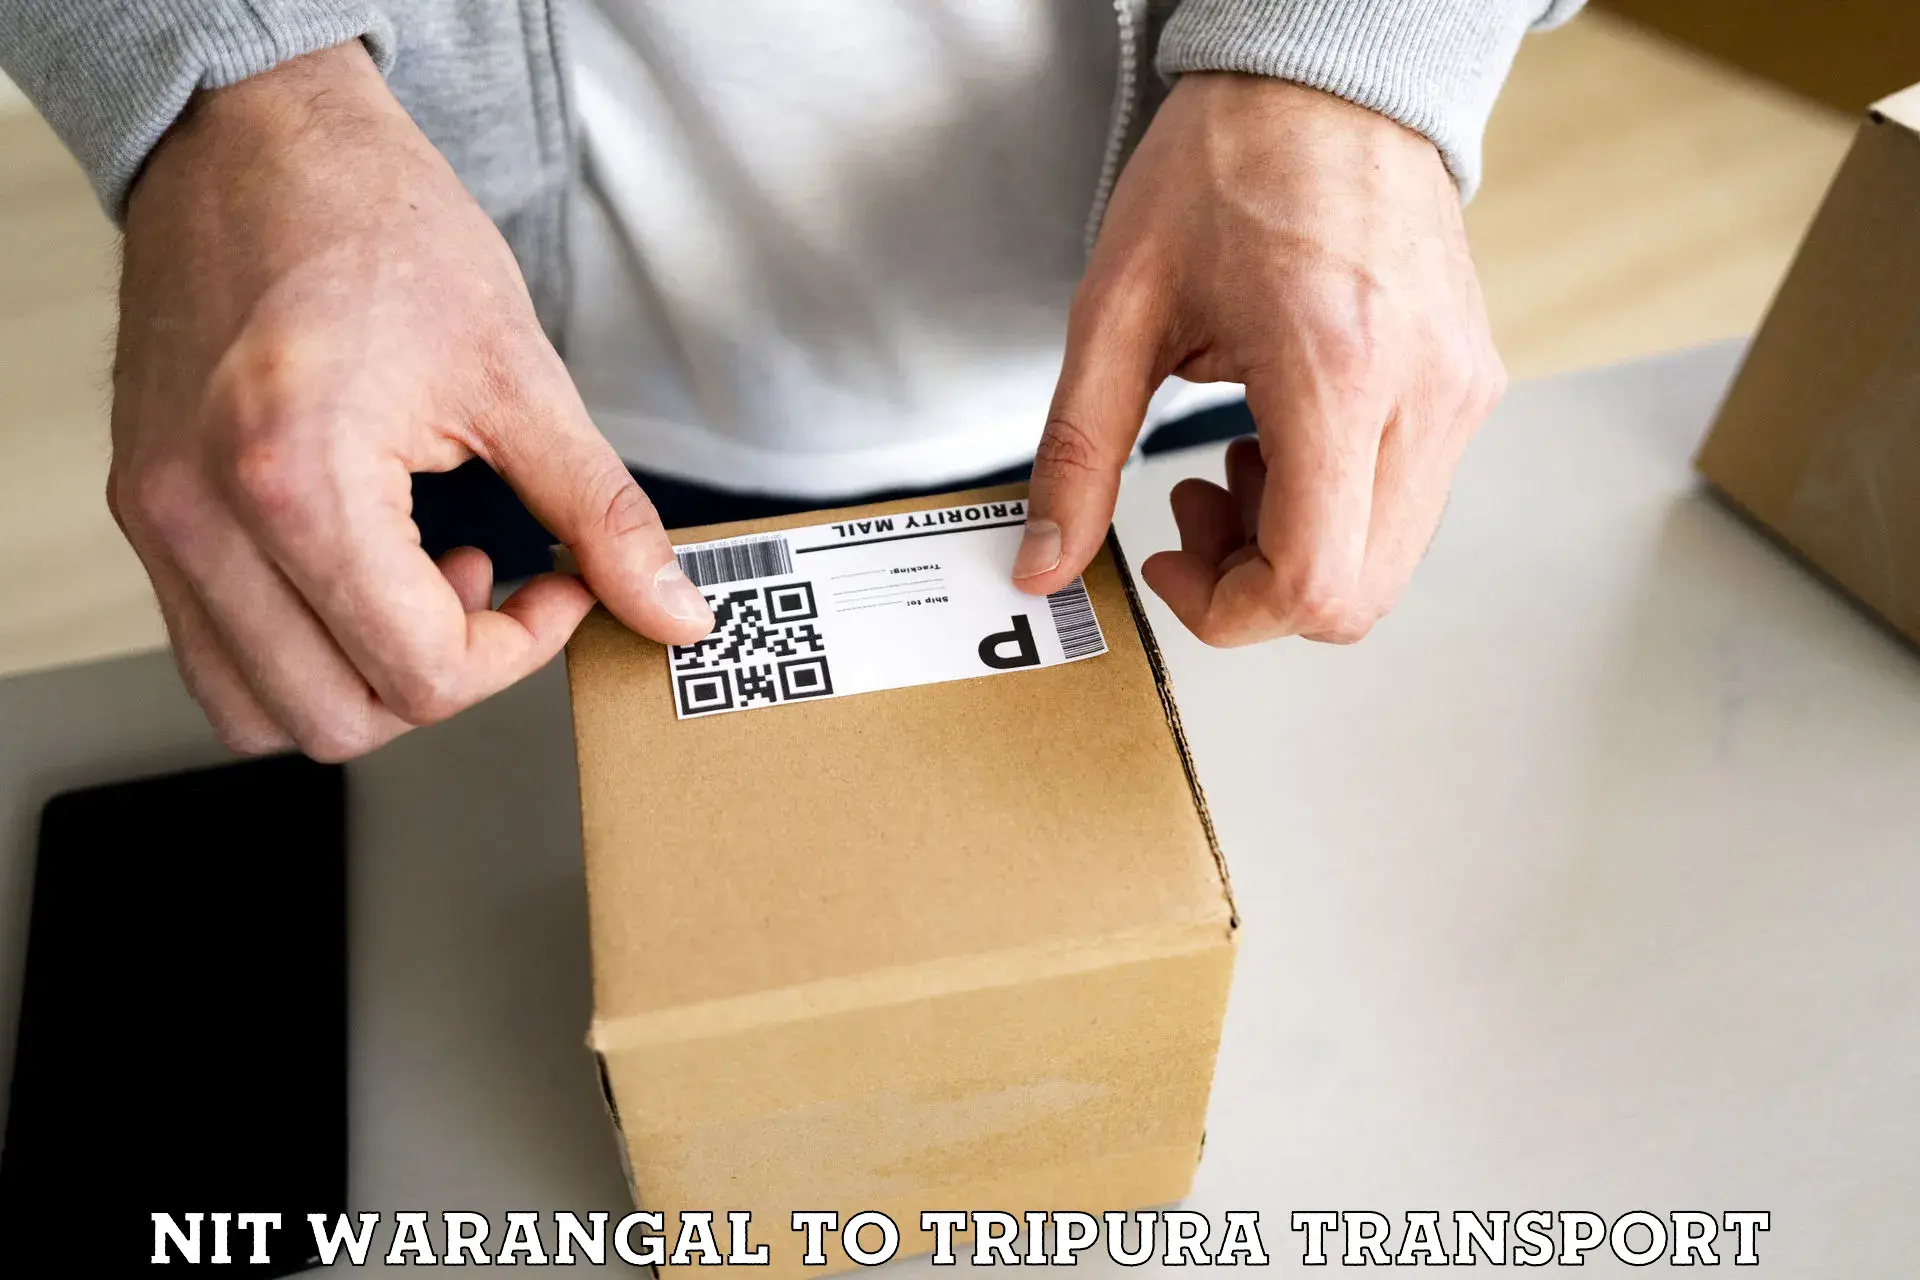 Two wheeler parcel service NIT Warangal to Udaipur Tripura